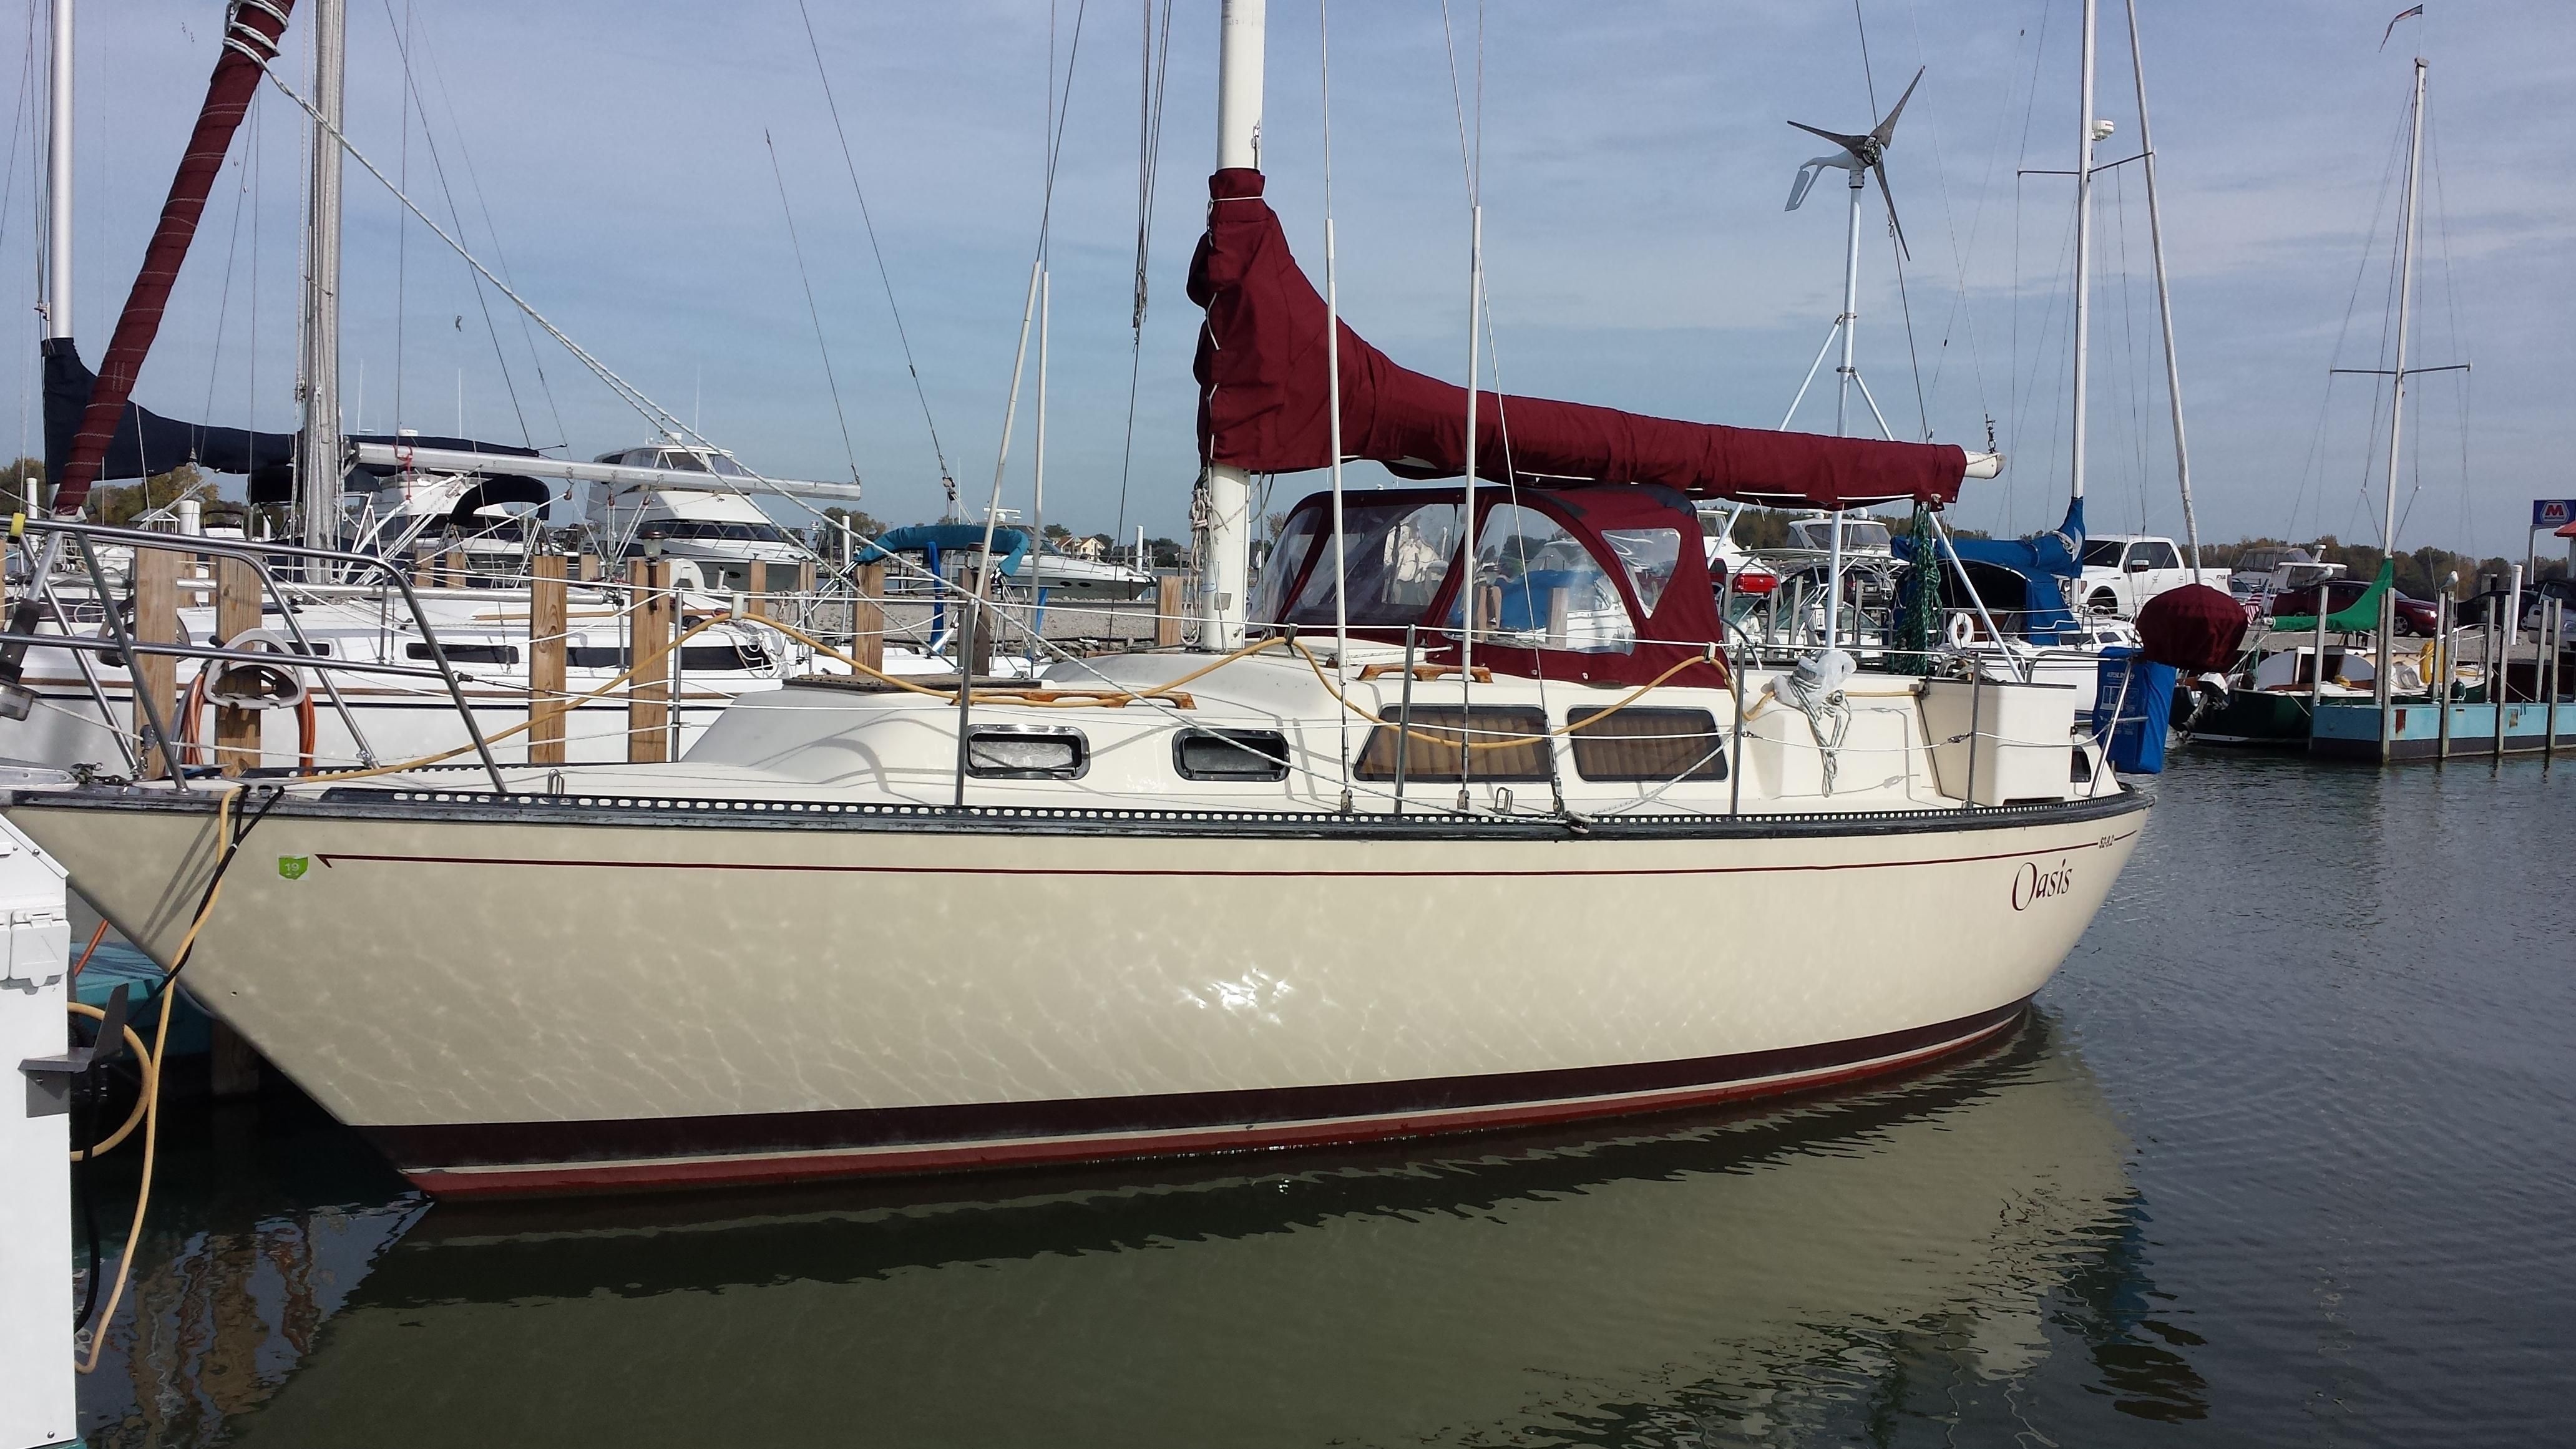 s2 30 foot sailboat